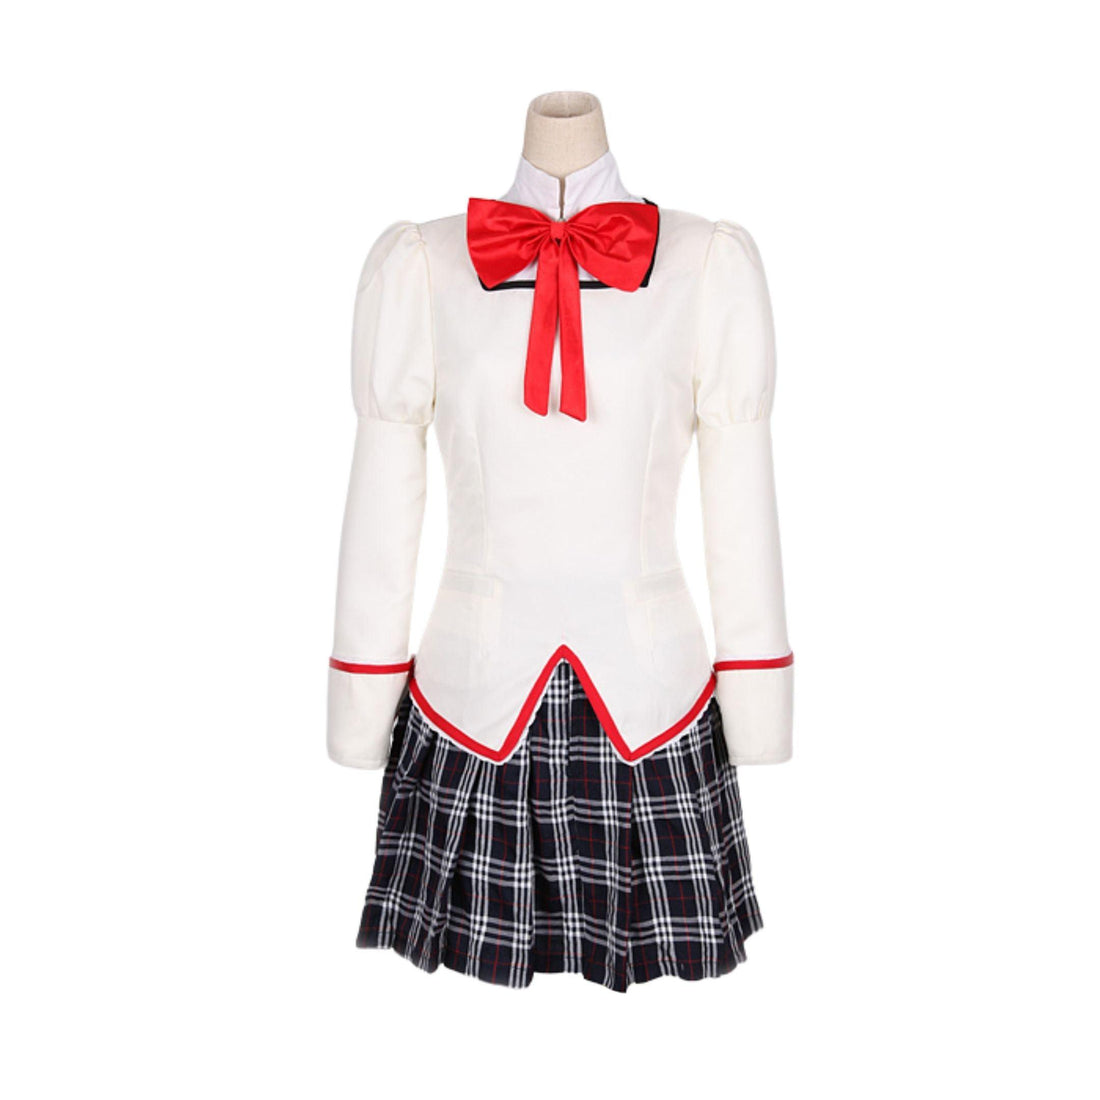 SBluuCosplay Puella Magi Madoka Magica Mitakihara Middle School Uniform Cosplay Costume - SBluuCosplay